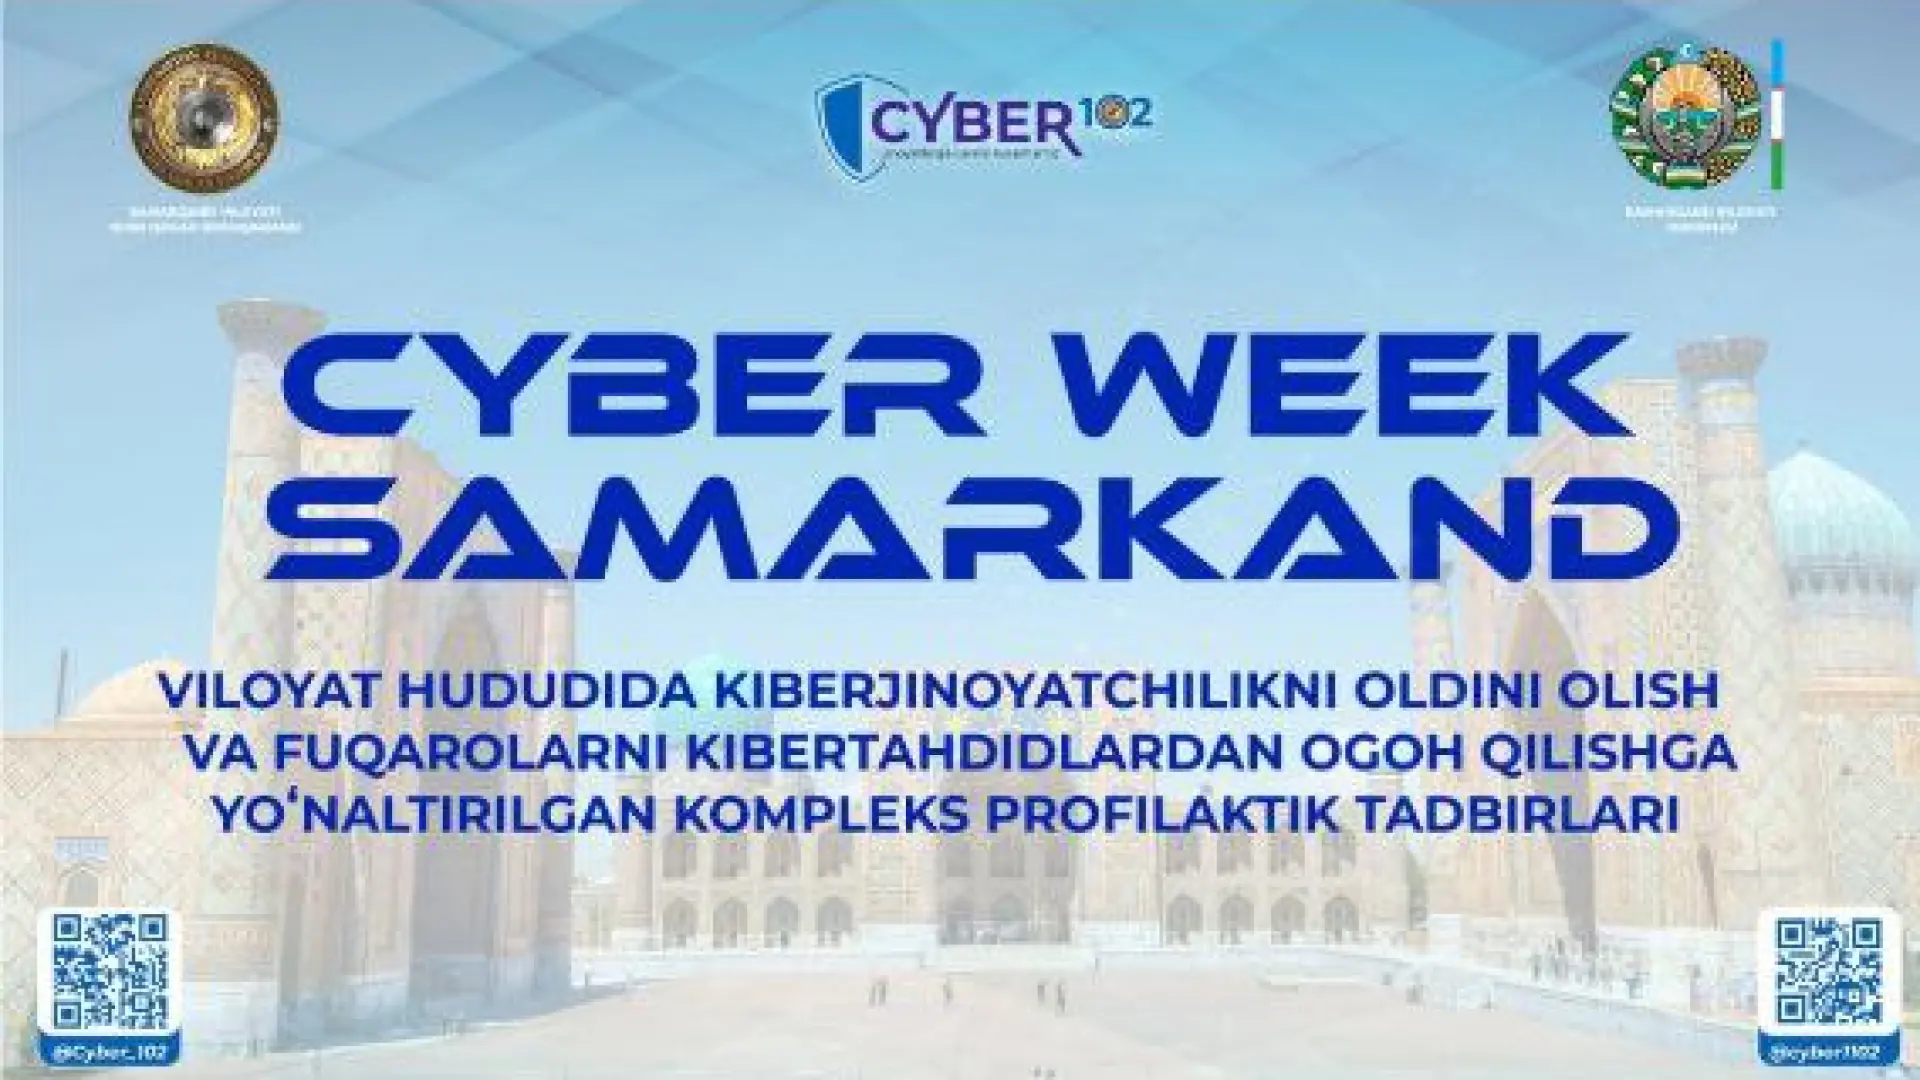 "Cyber Week" kompleks targ'ibot-tashviqot tadbirlari doirasida tanlovlar